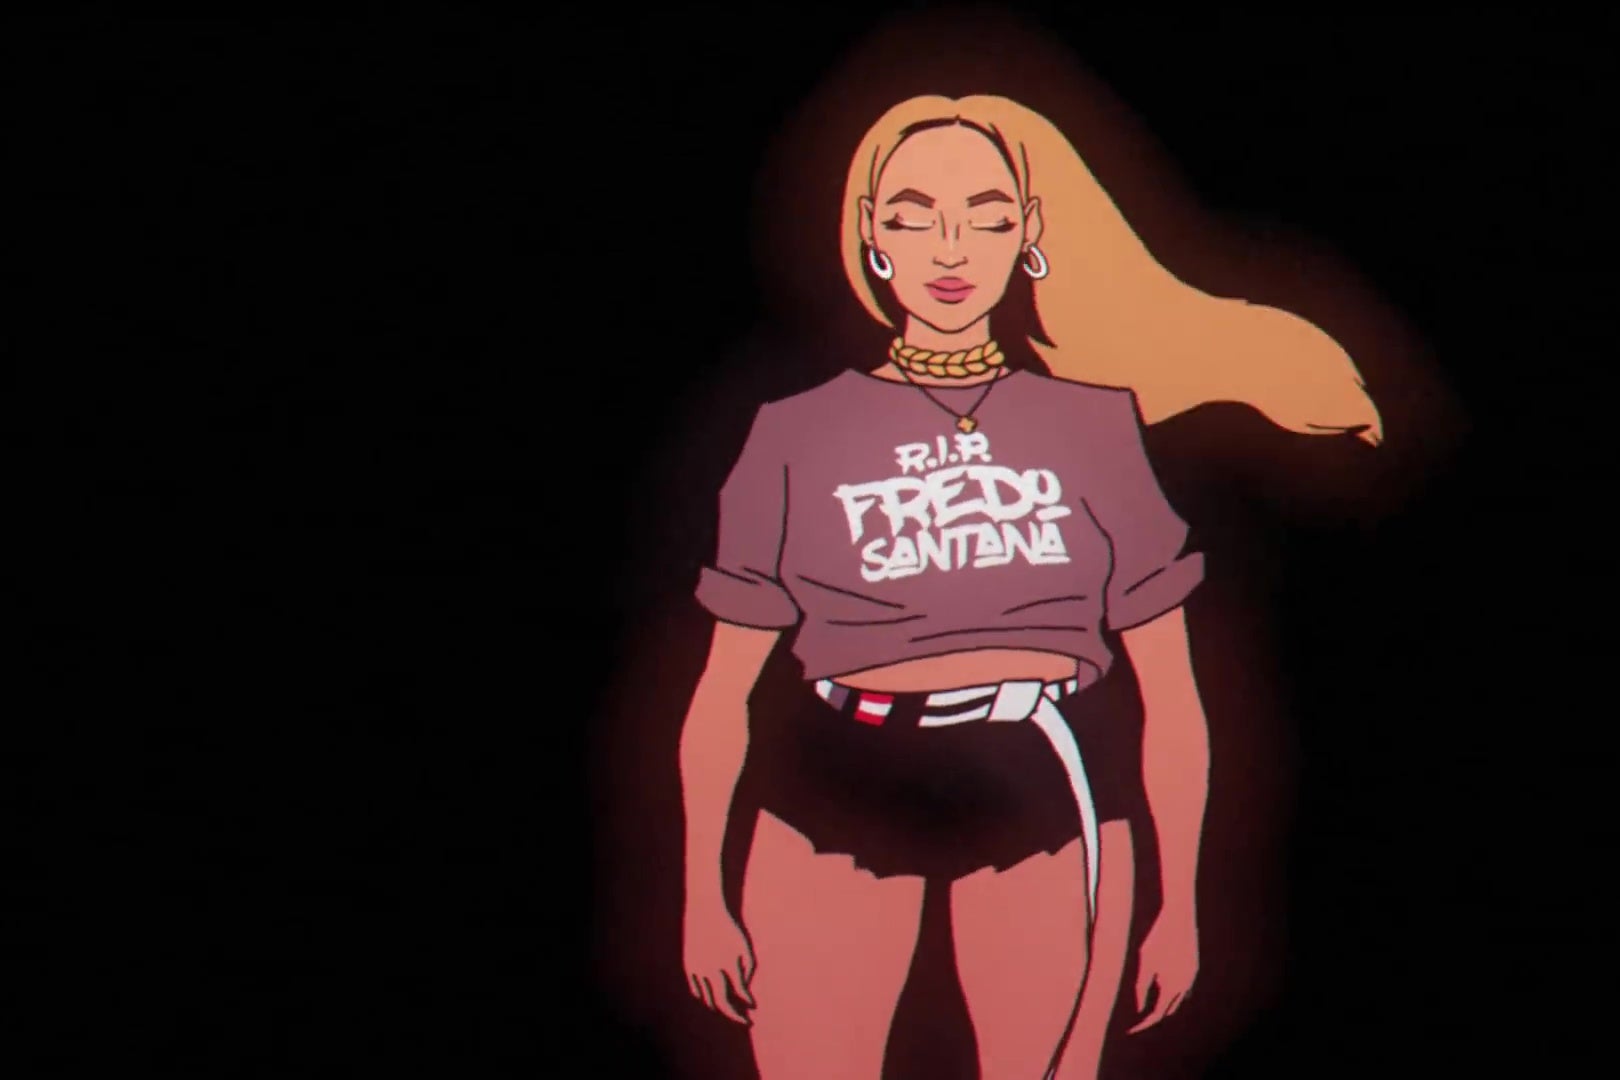 An animated version of Beyoncé.